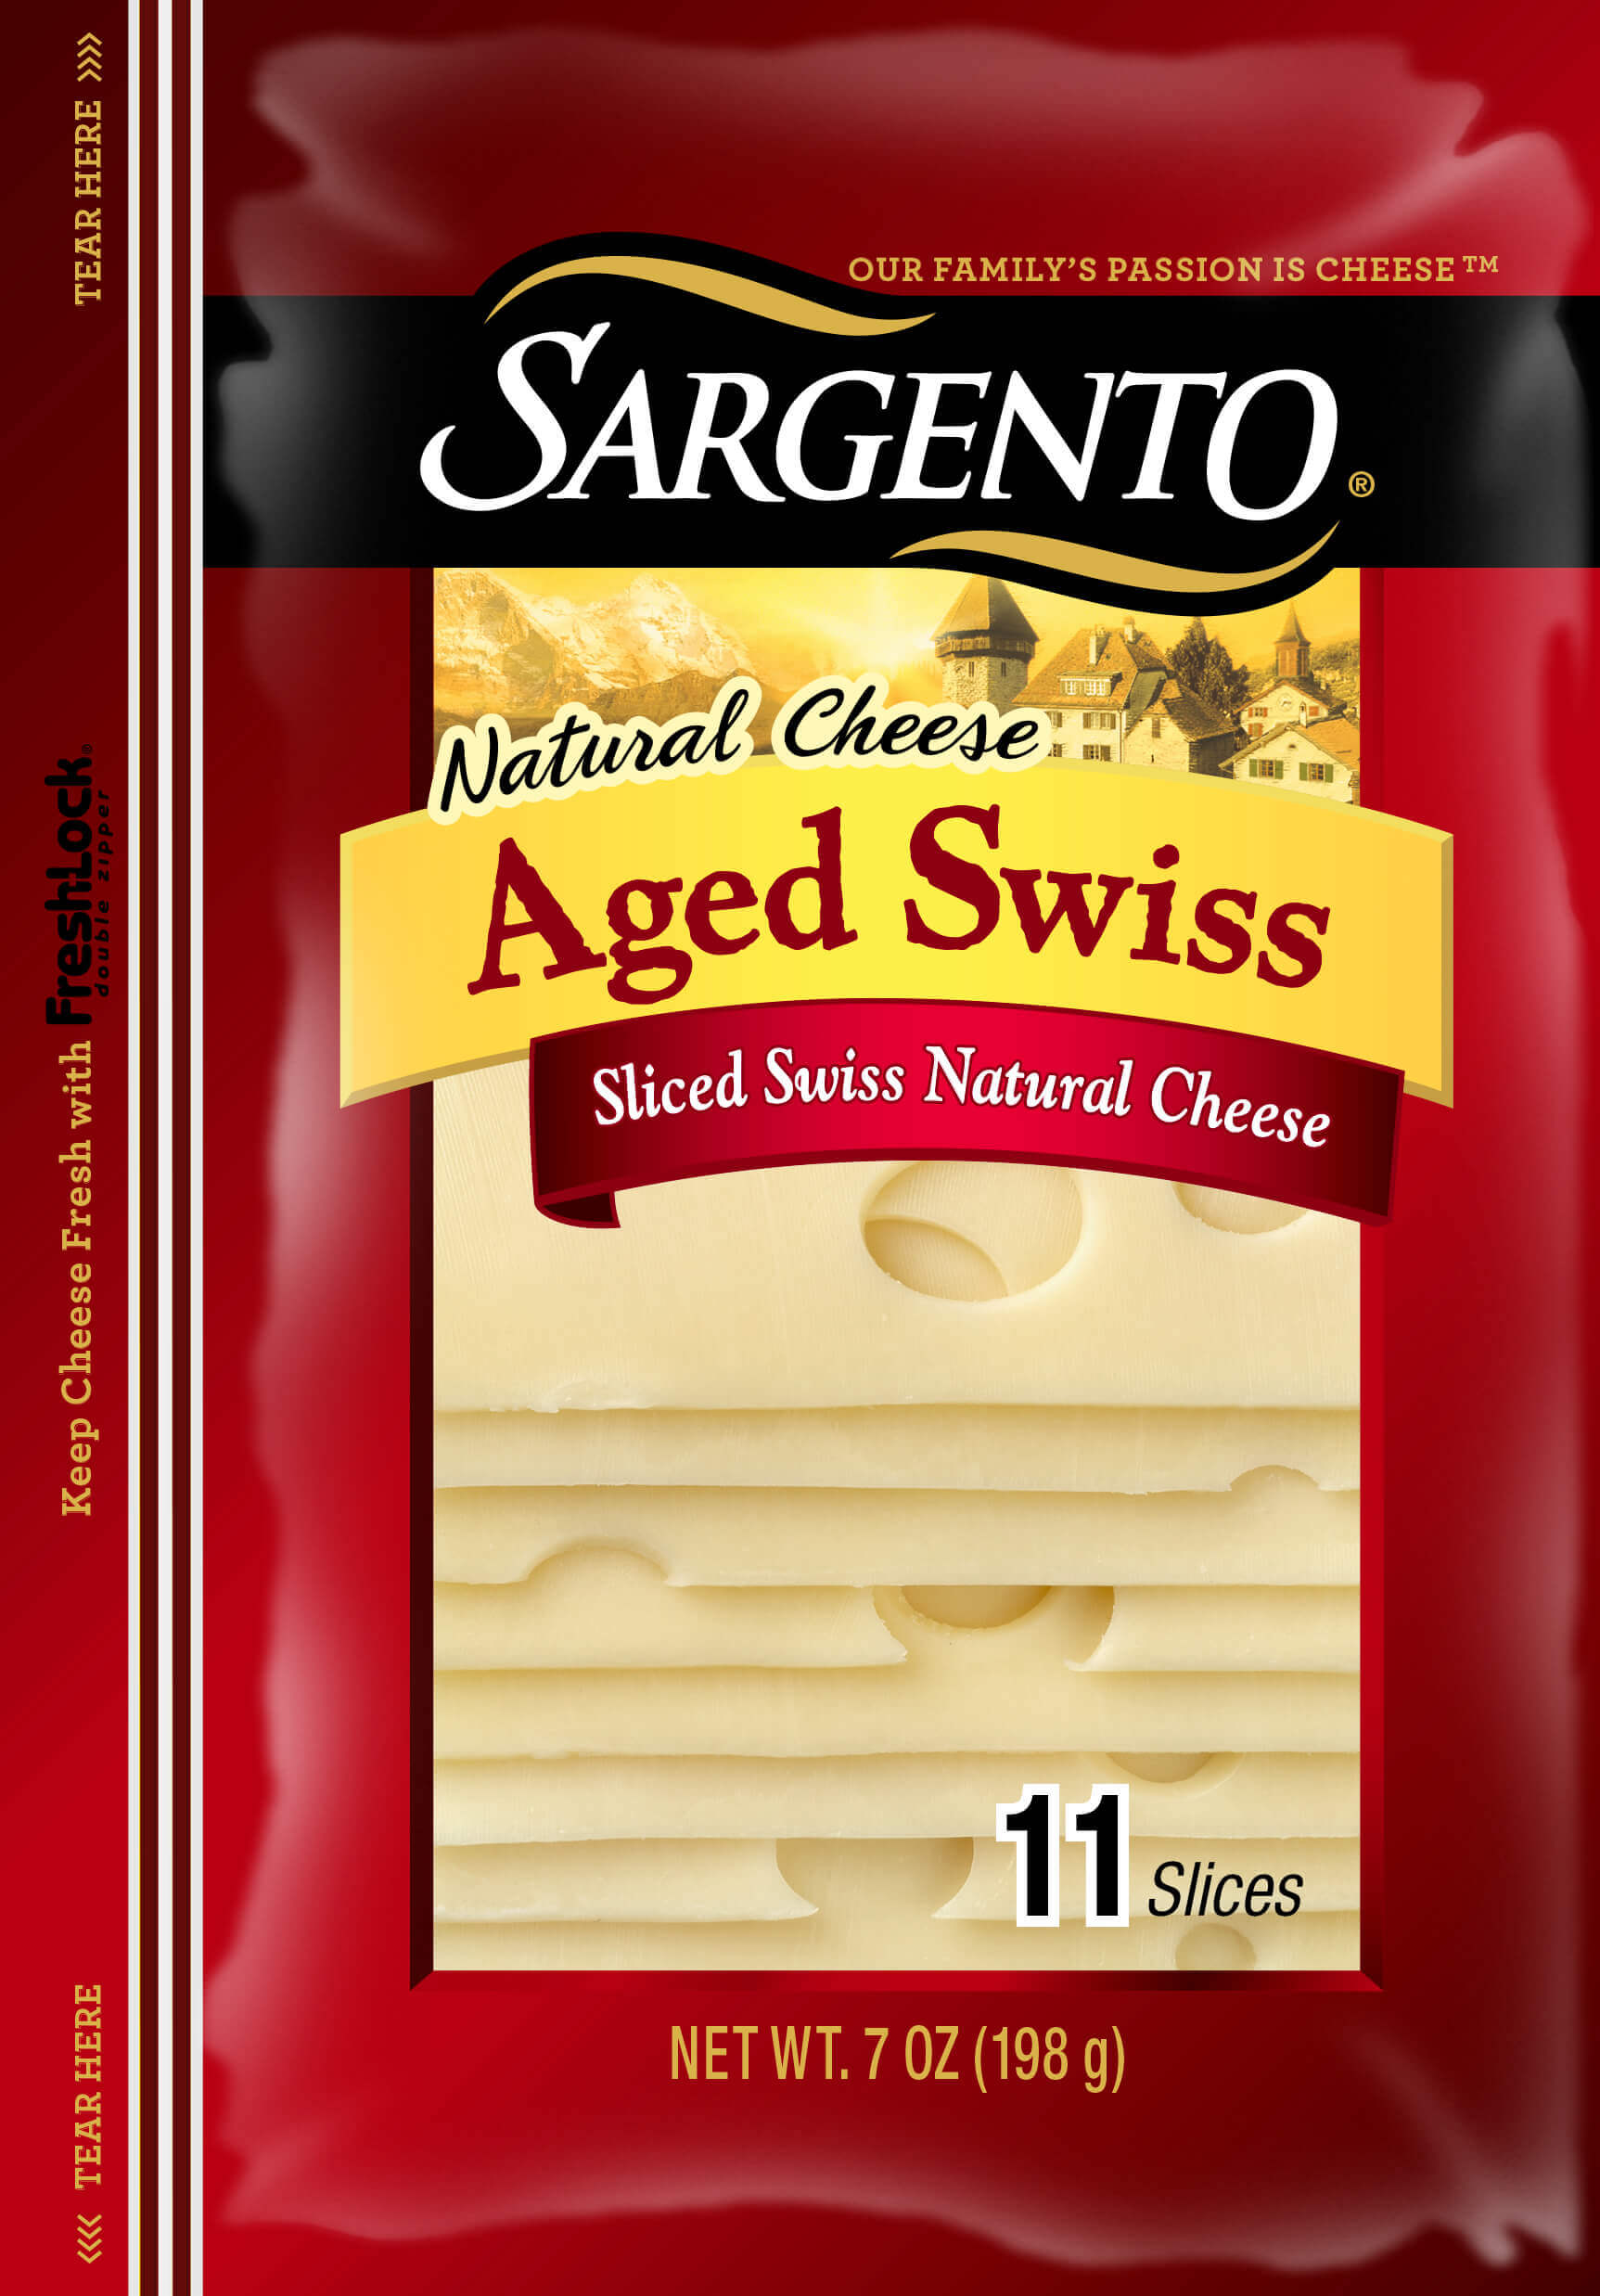 Sargento熟成瑞士乾酪片